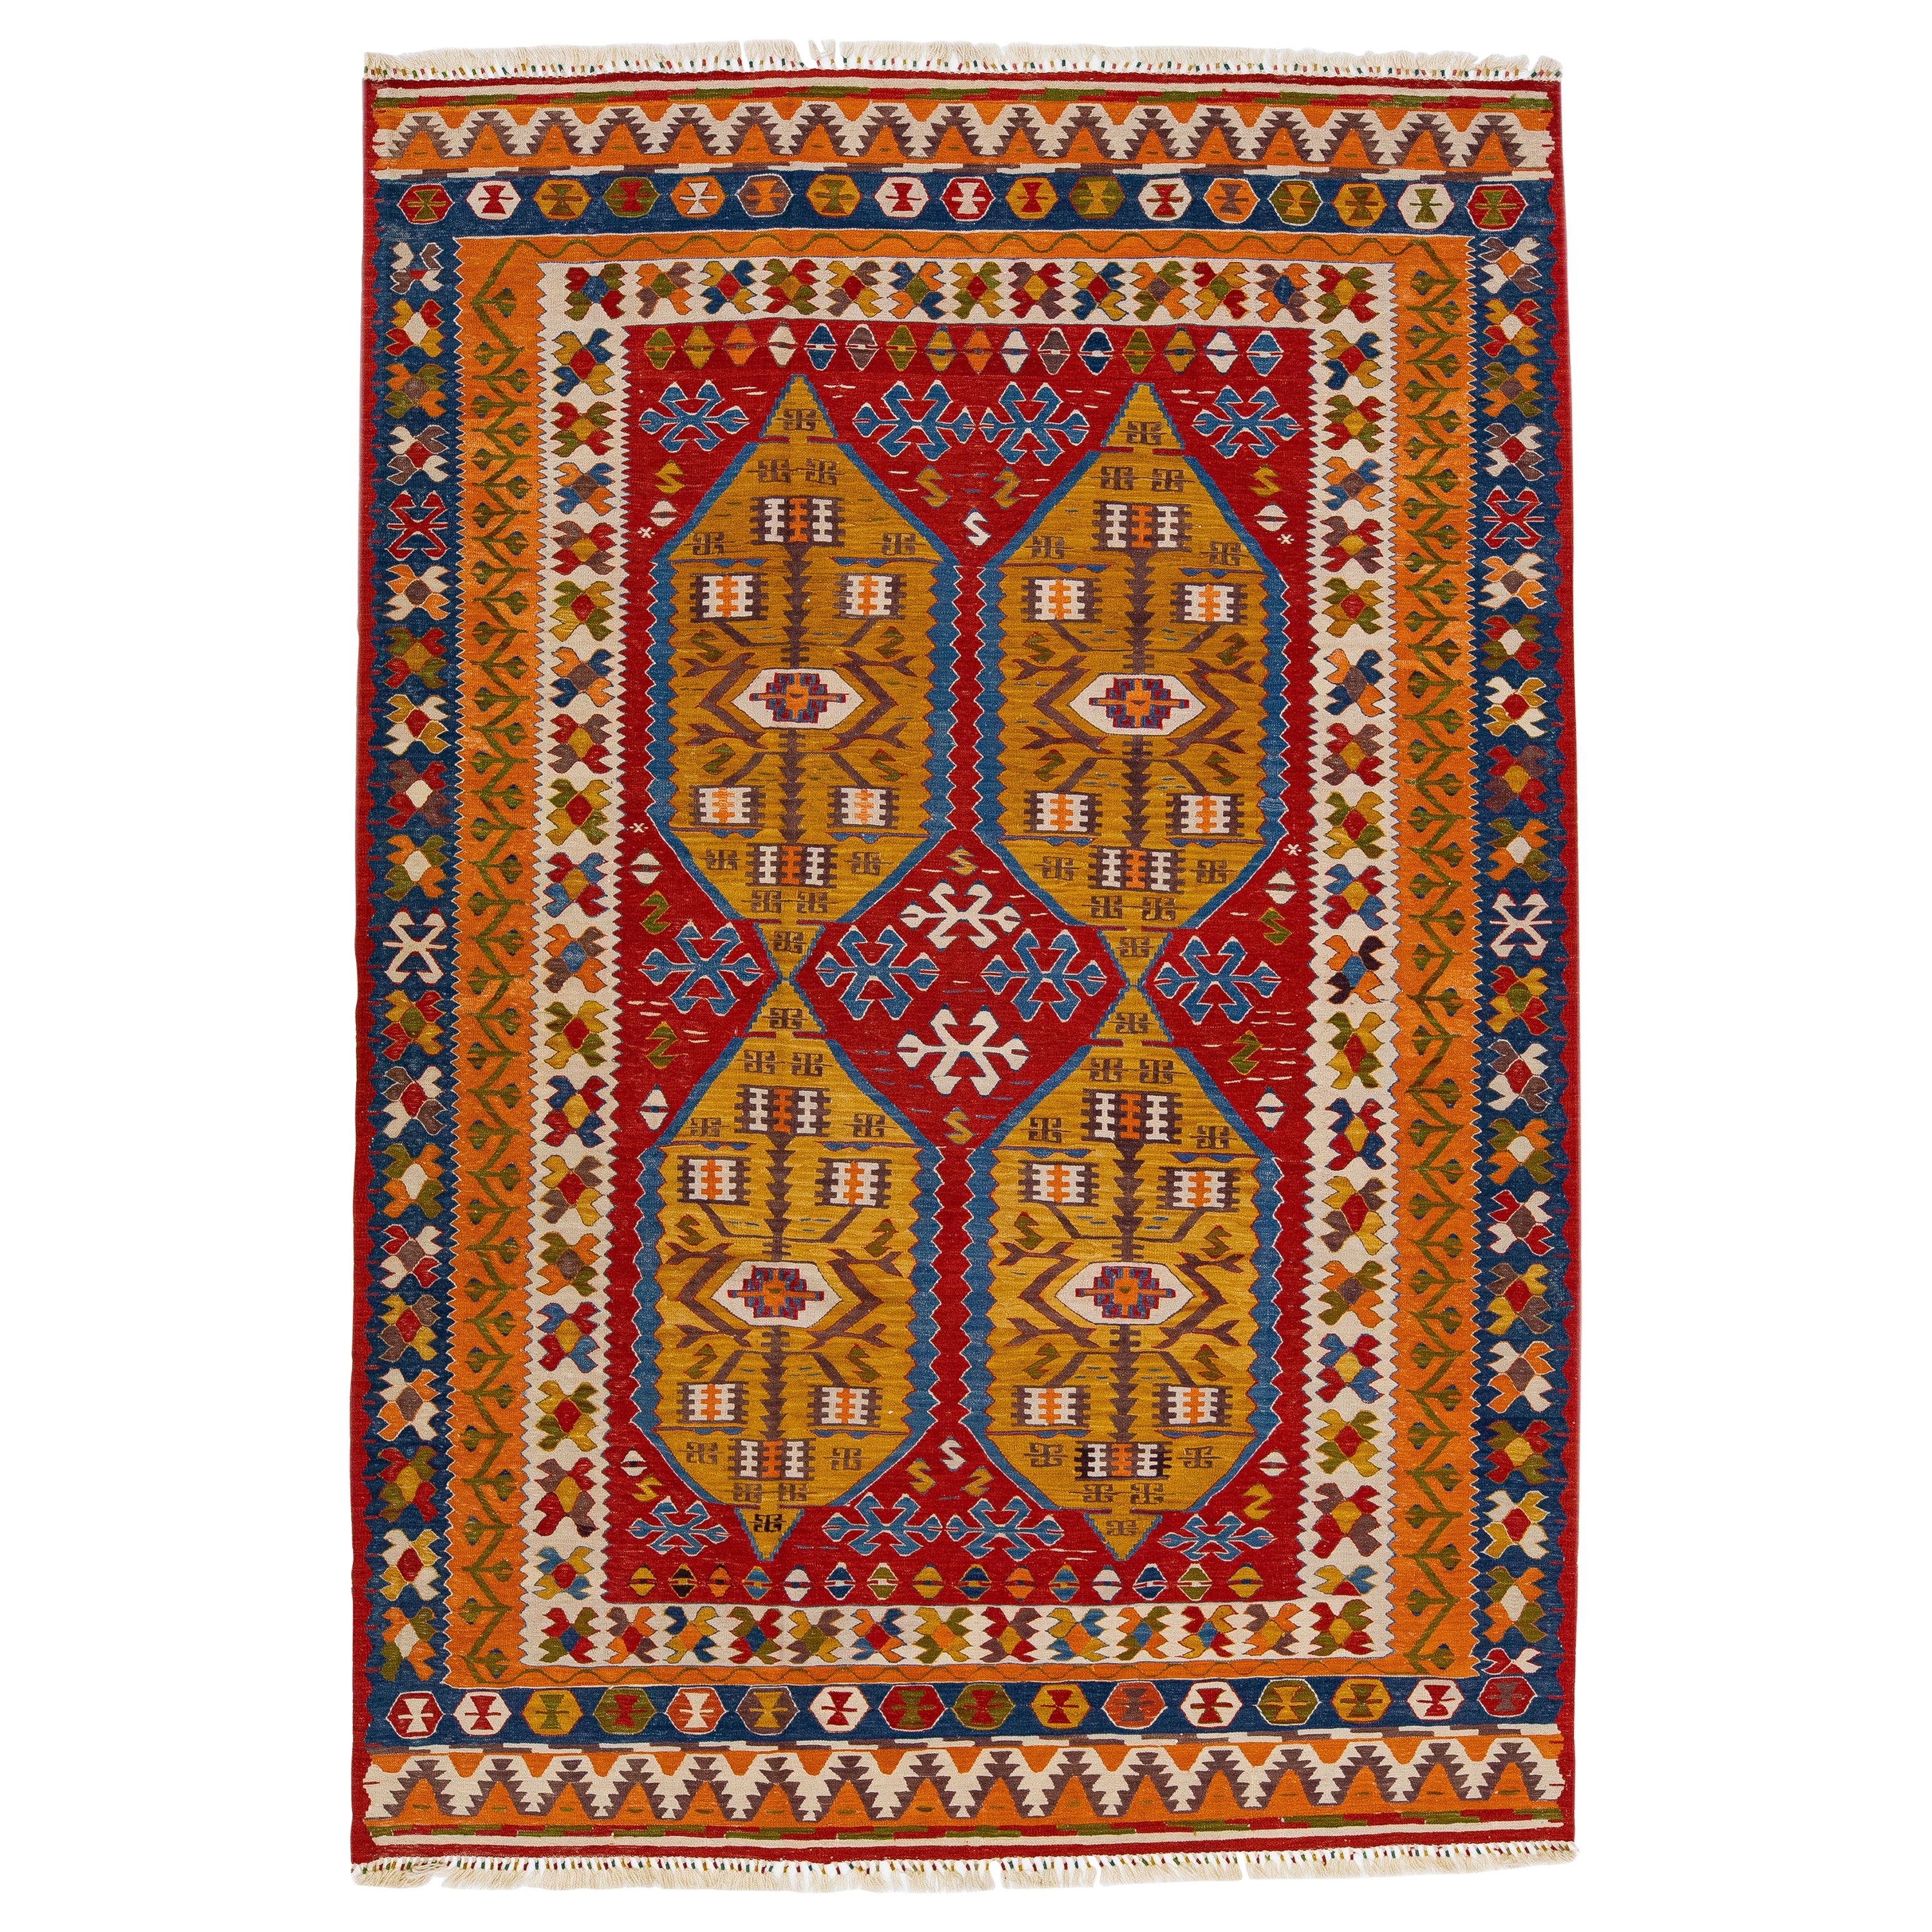 Moderner flachgewebter Kilim-Teppich aus mehrfarbiger Wolle mit Allover-Motiv